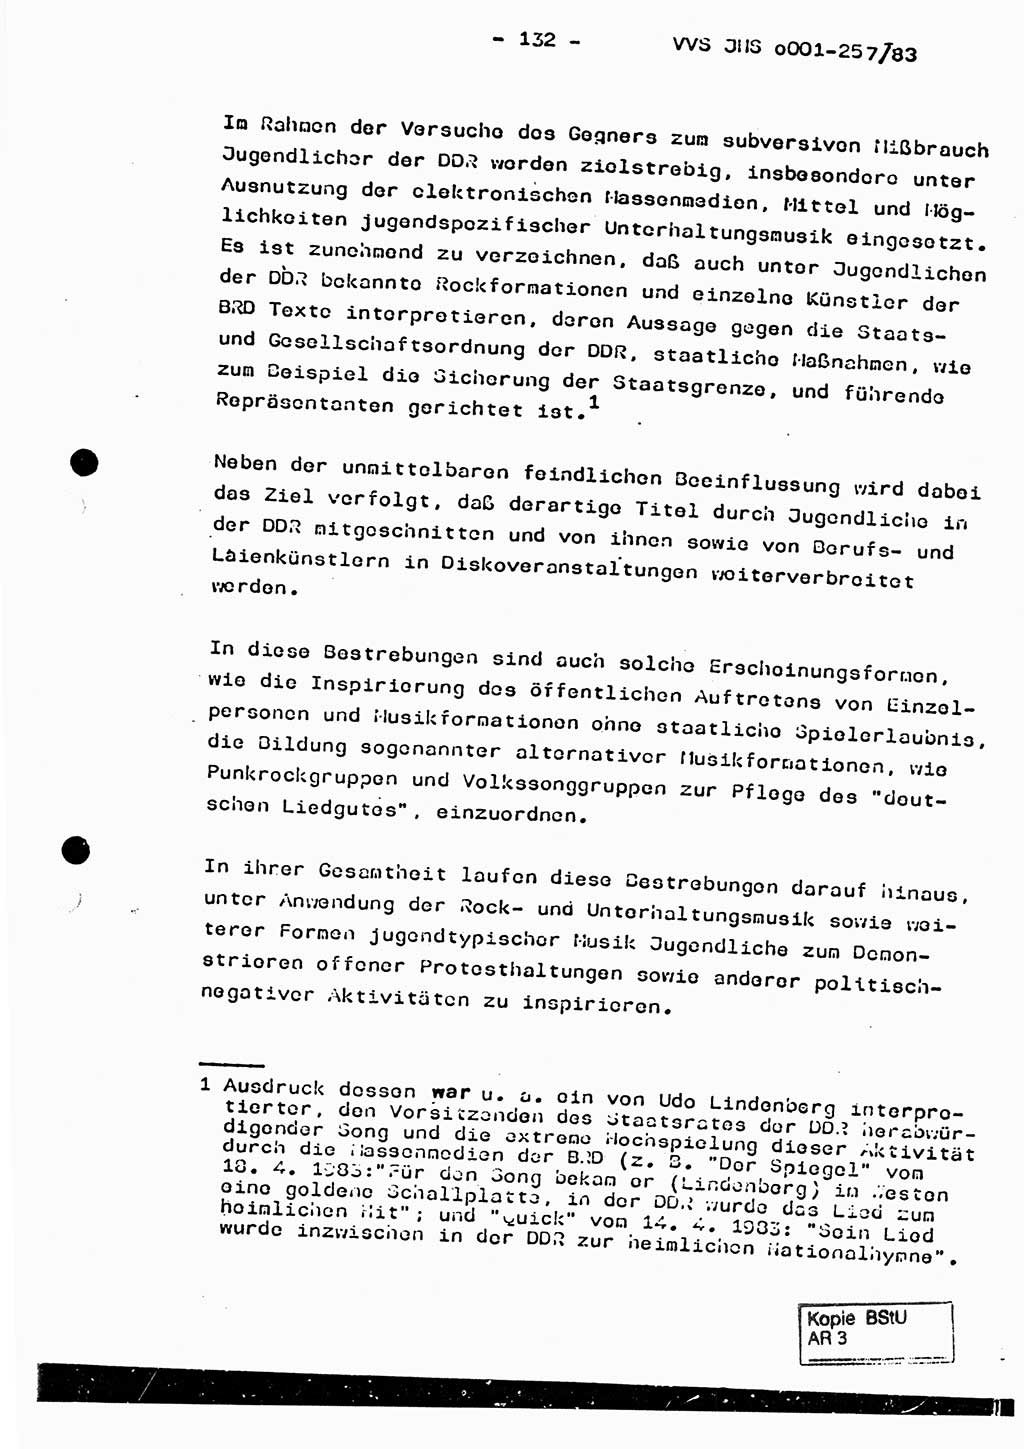 Dissertation, Oberst Helmut Lubas (BV Mdg.), Oberstleutnant Manfred Eschberger (HA IX), Oberleutnant Hans-Jürgen Ludwig (JHS), Ministerium für Staatssicherheit (MfS) [Deutsche Demokratische Republik (DDR)], Juristische Hochschule (JHS), Vertrauliche Verschlußsache (VVS) o001-257/83, Potsdam 1983, Seite 132 (Diss. MfS DDR JHS VVS o001-257/83 1983, S. 132)